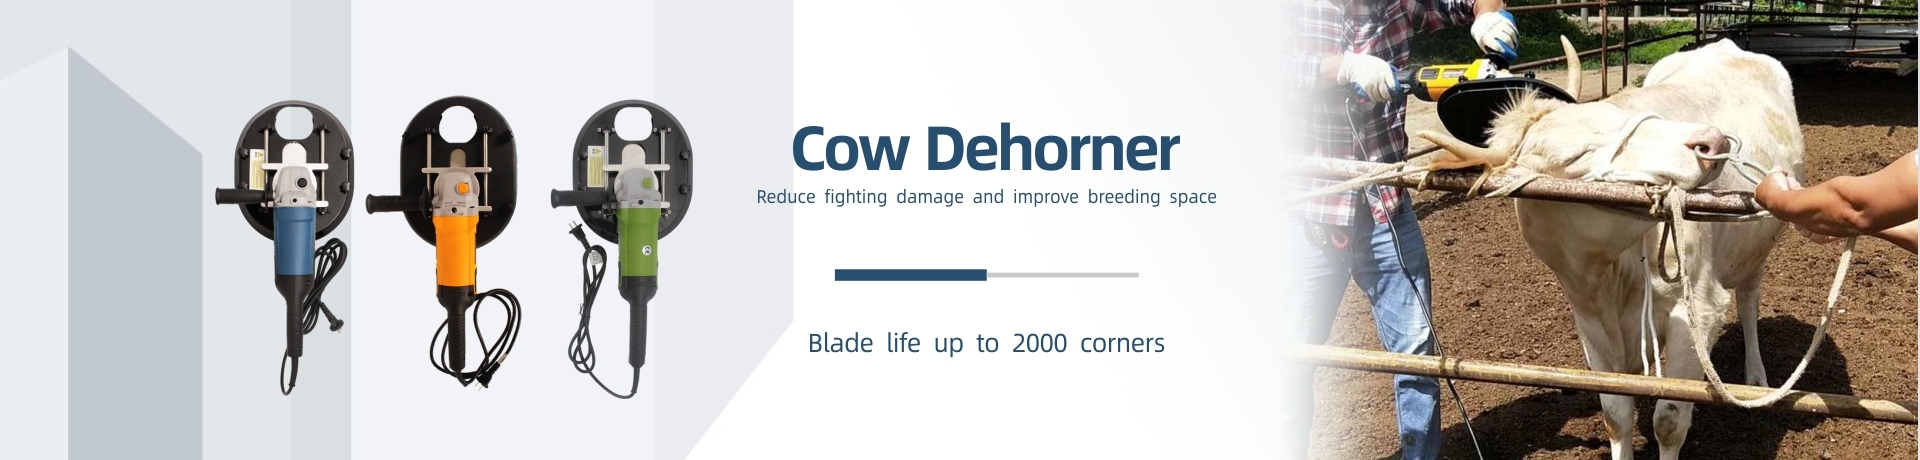 Cow Dehorner